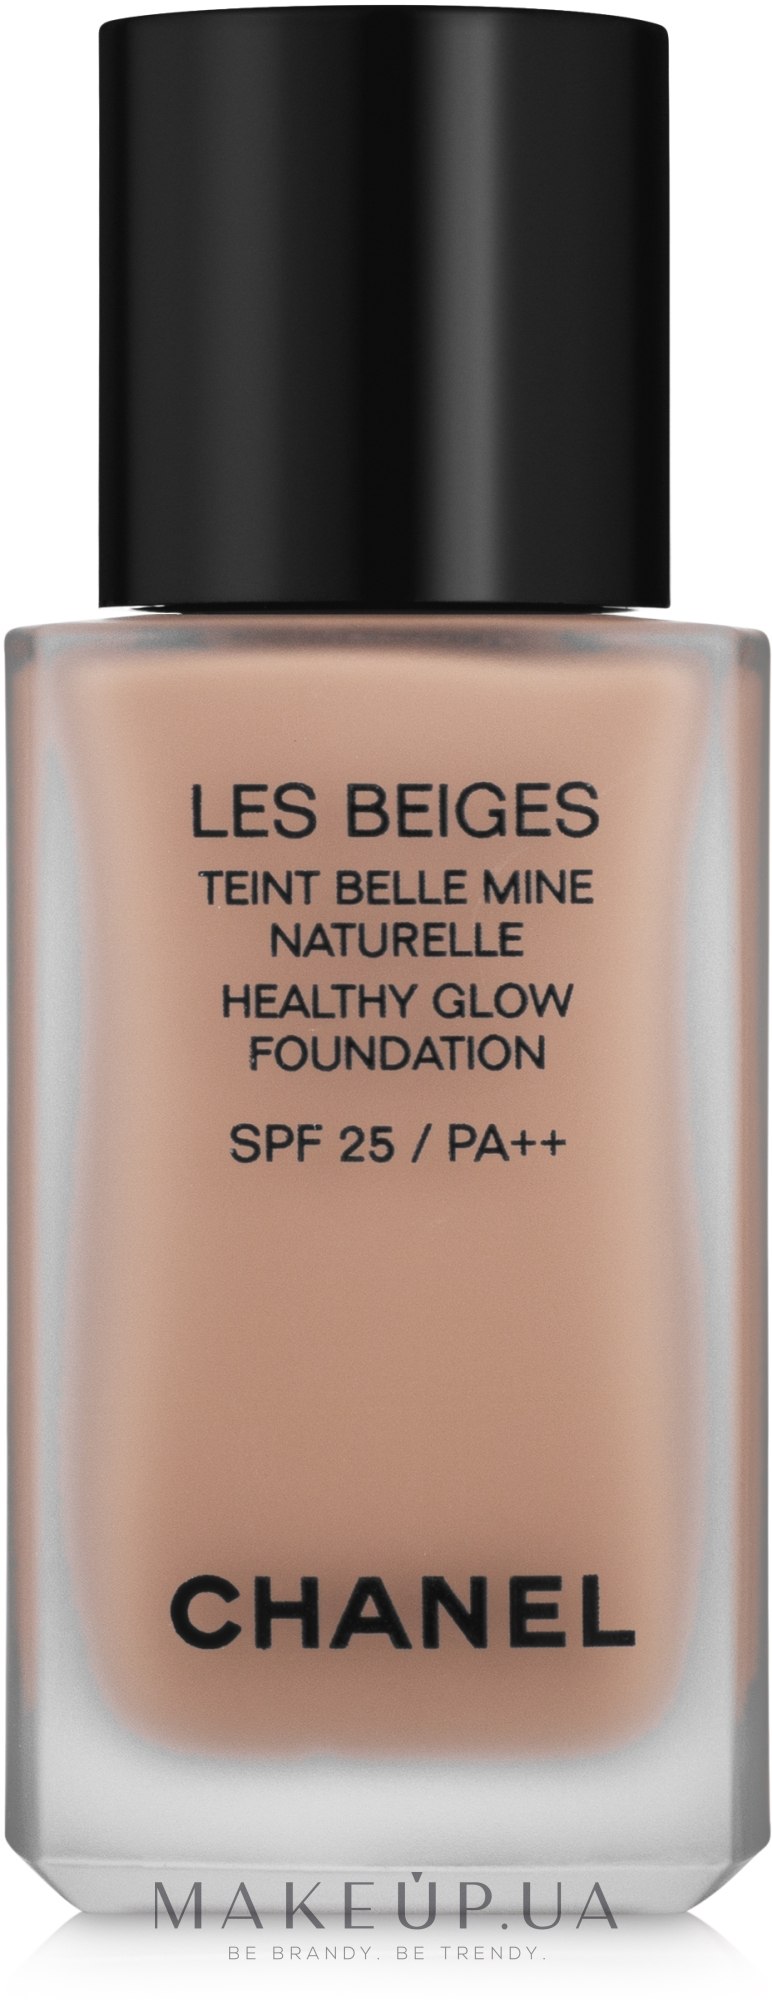 Chanel Les Beiges Healthy Glow Foundation SPF 25 PA++ - Тональный флюид:  купить по лучшей цене в Украине